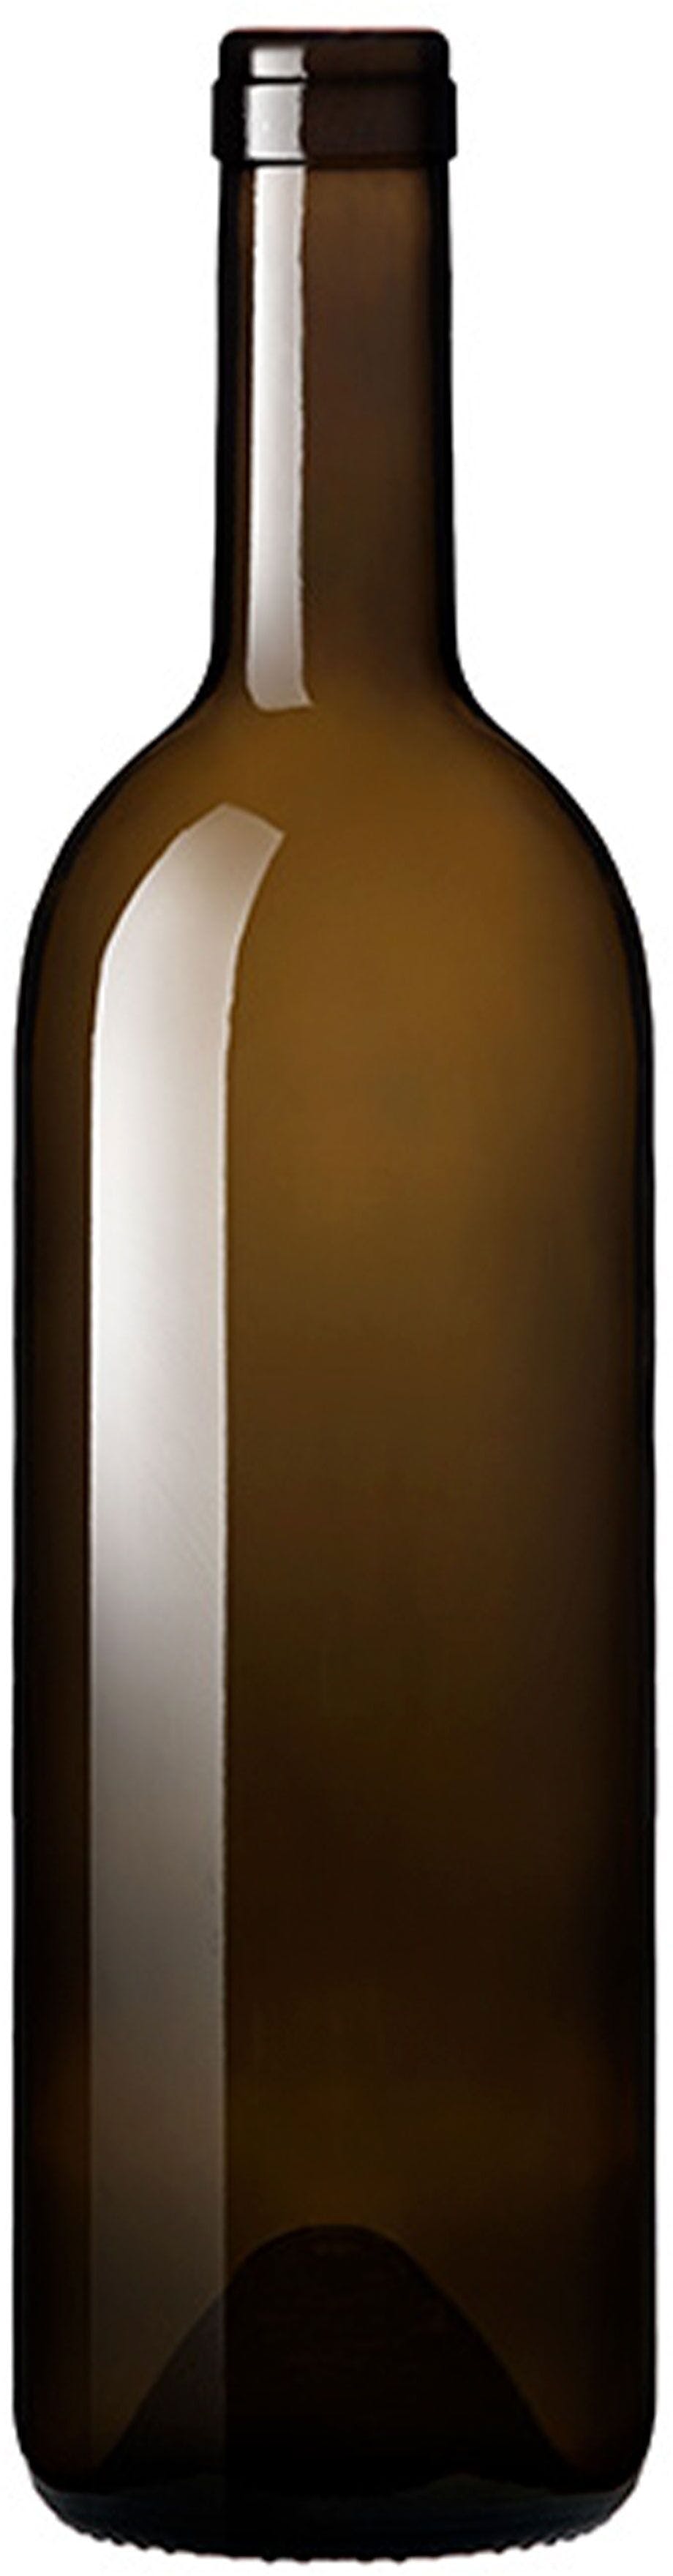 Flasche Bordeaux   ANTICA 750 ml BG-Korken